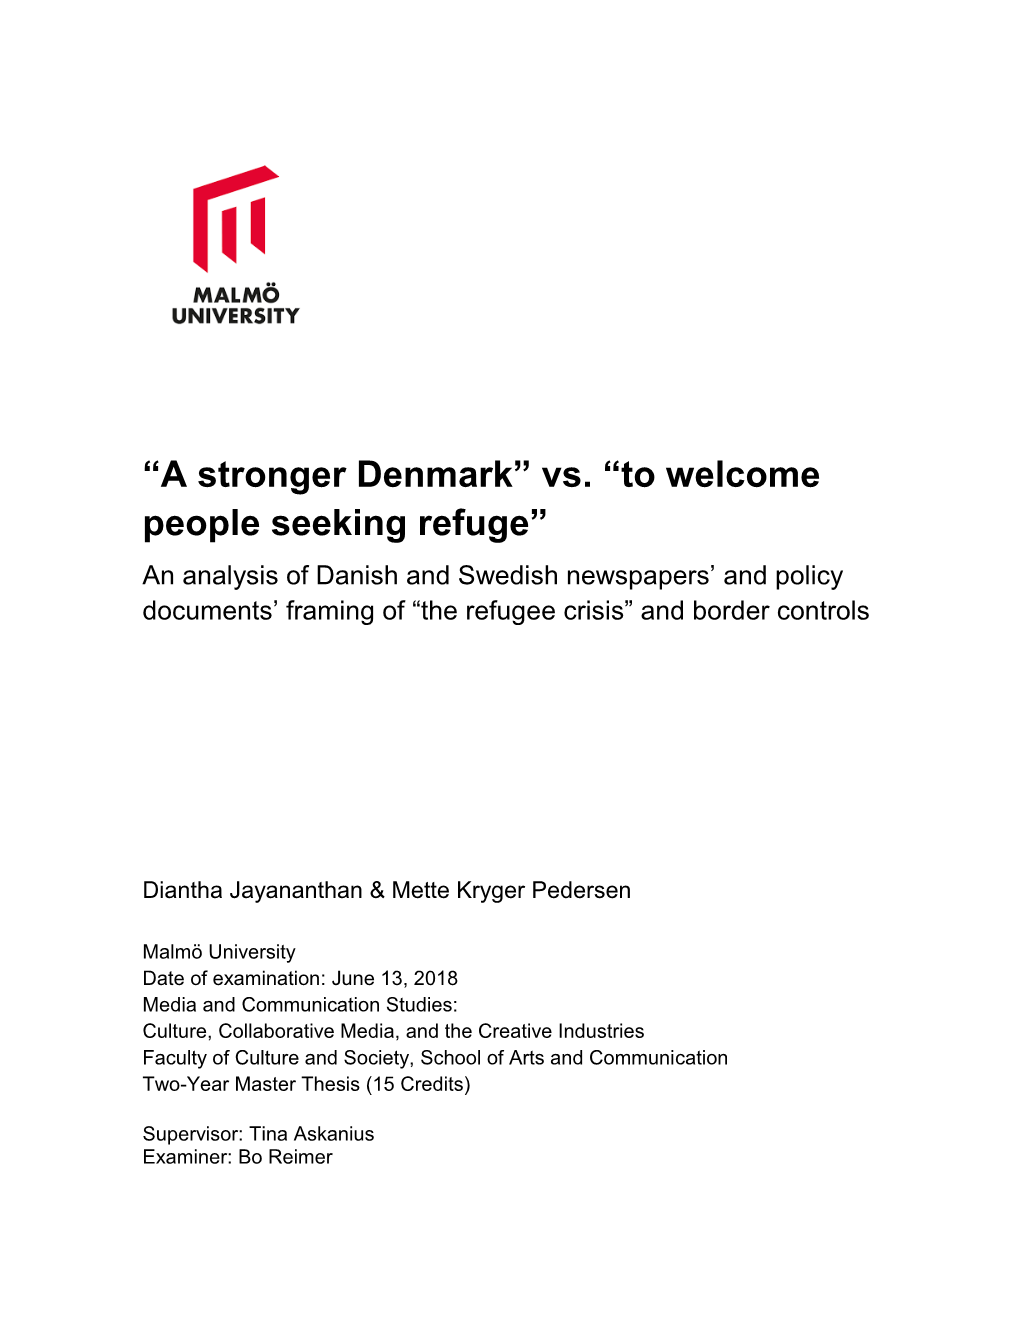 A Stronger Denmark” Vs